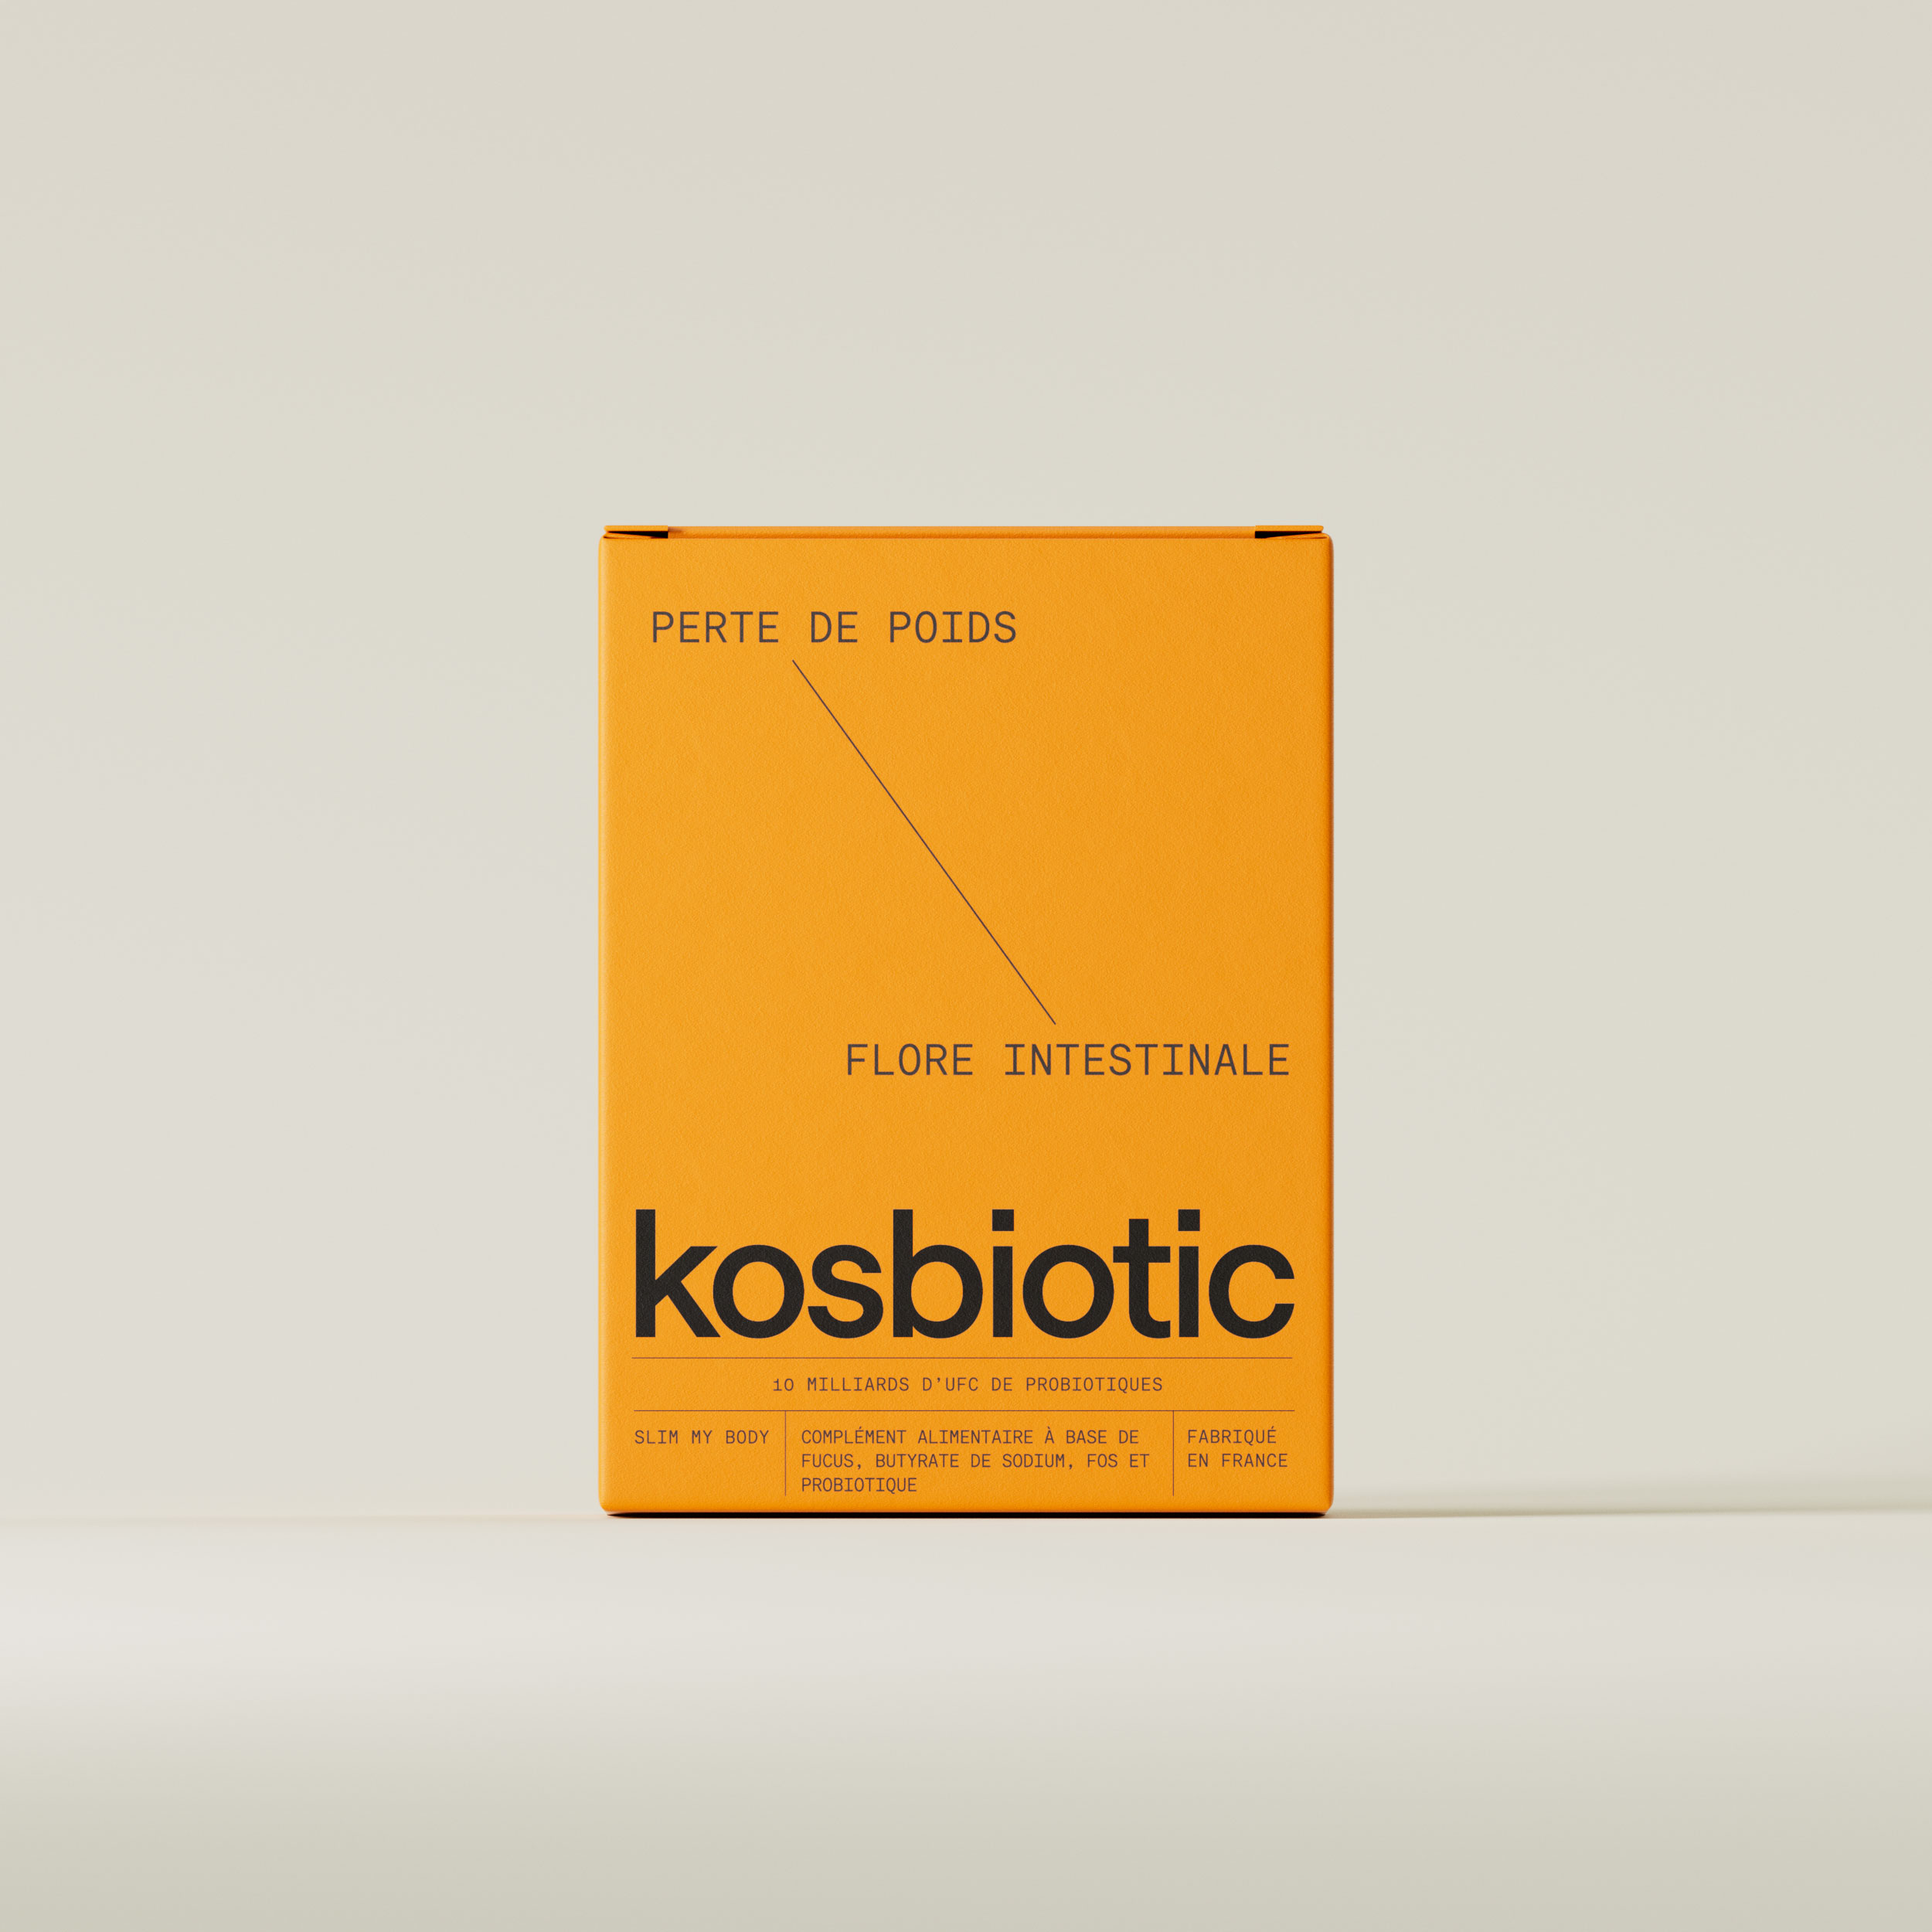 Boîte de complément alimentaire Kosbiotic pour la perte de poids et la flore intestinale, fabriqué en France.